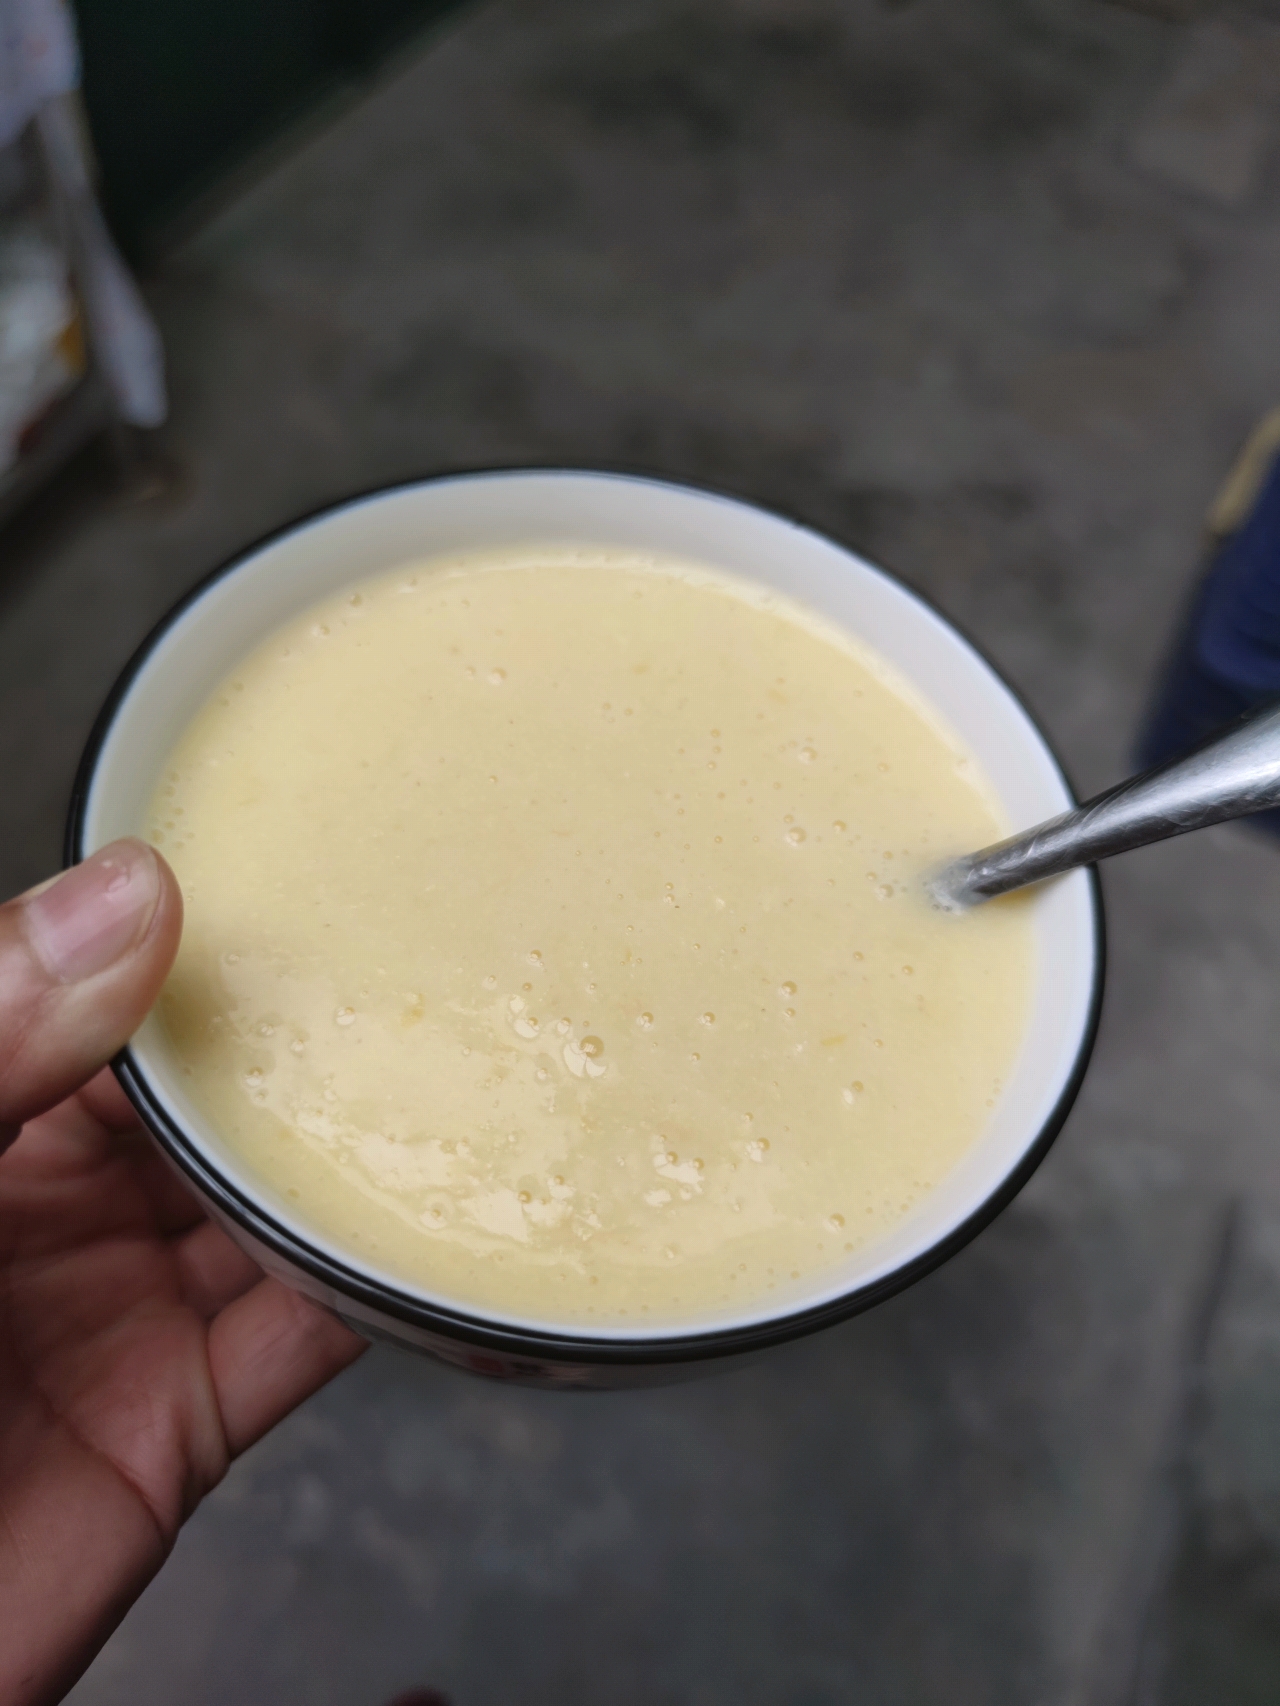 懒人豆浆机版–奶香玉米汁